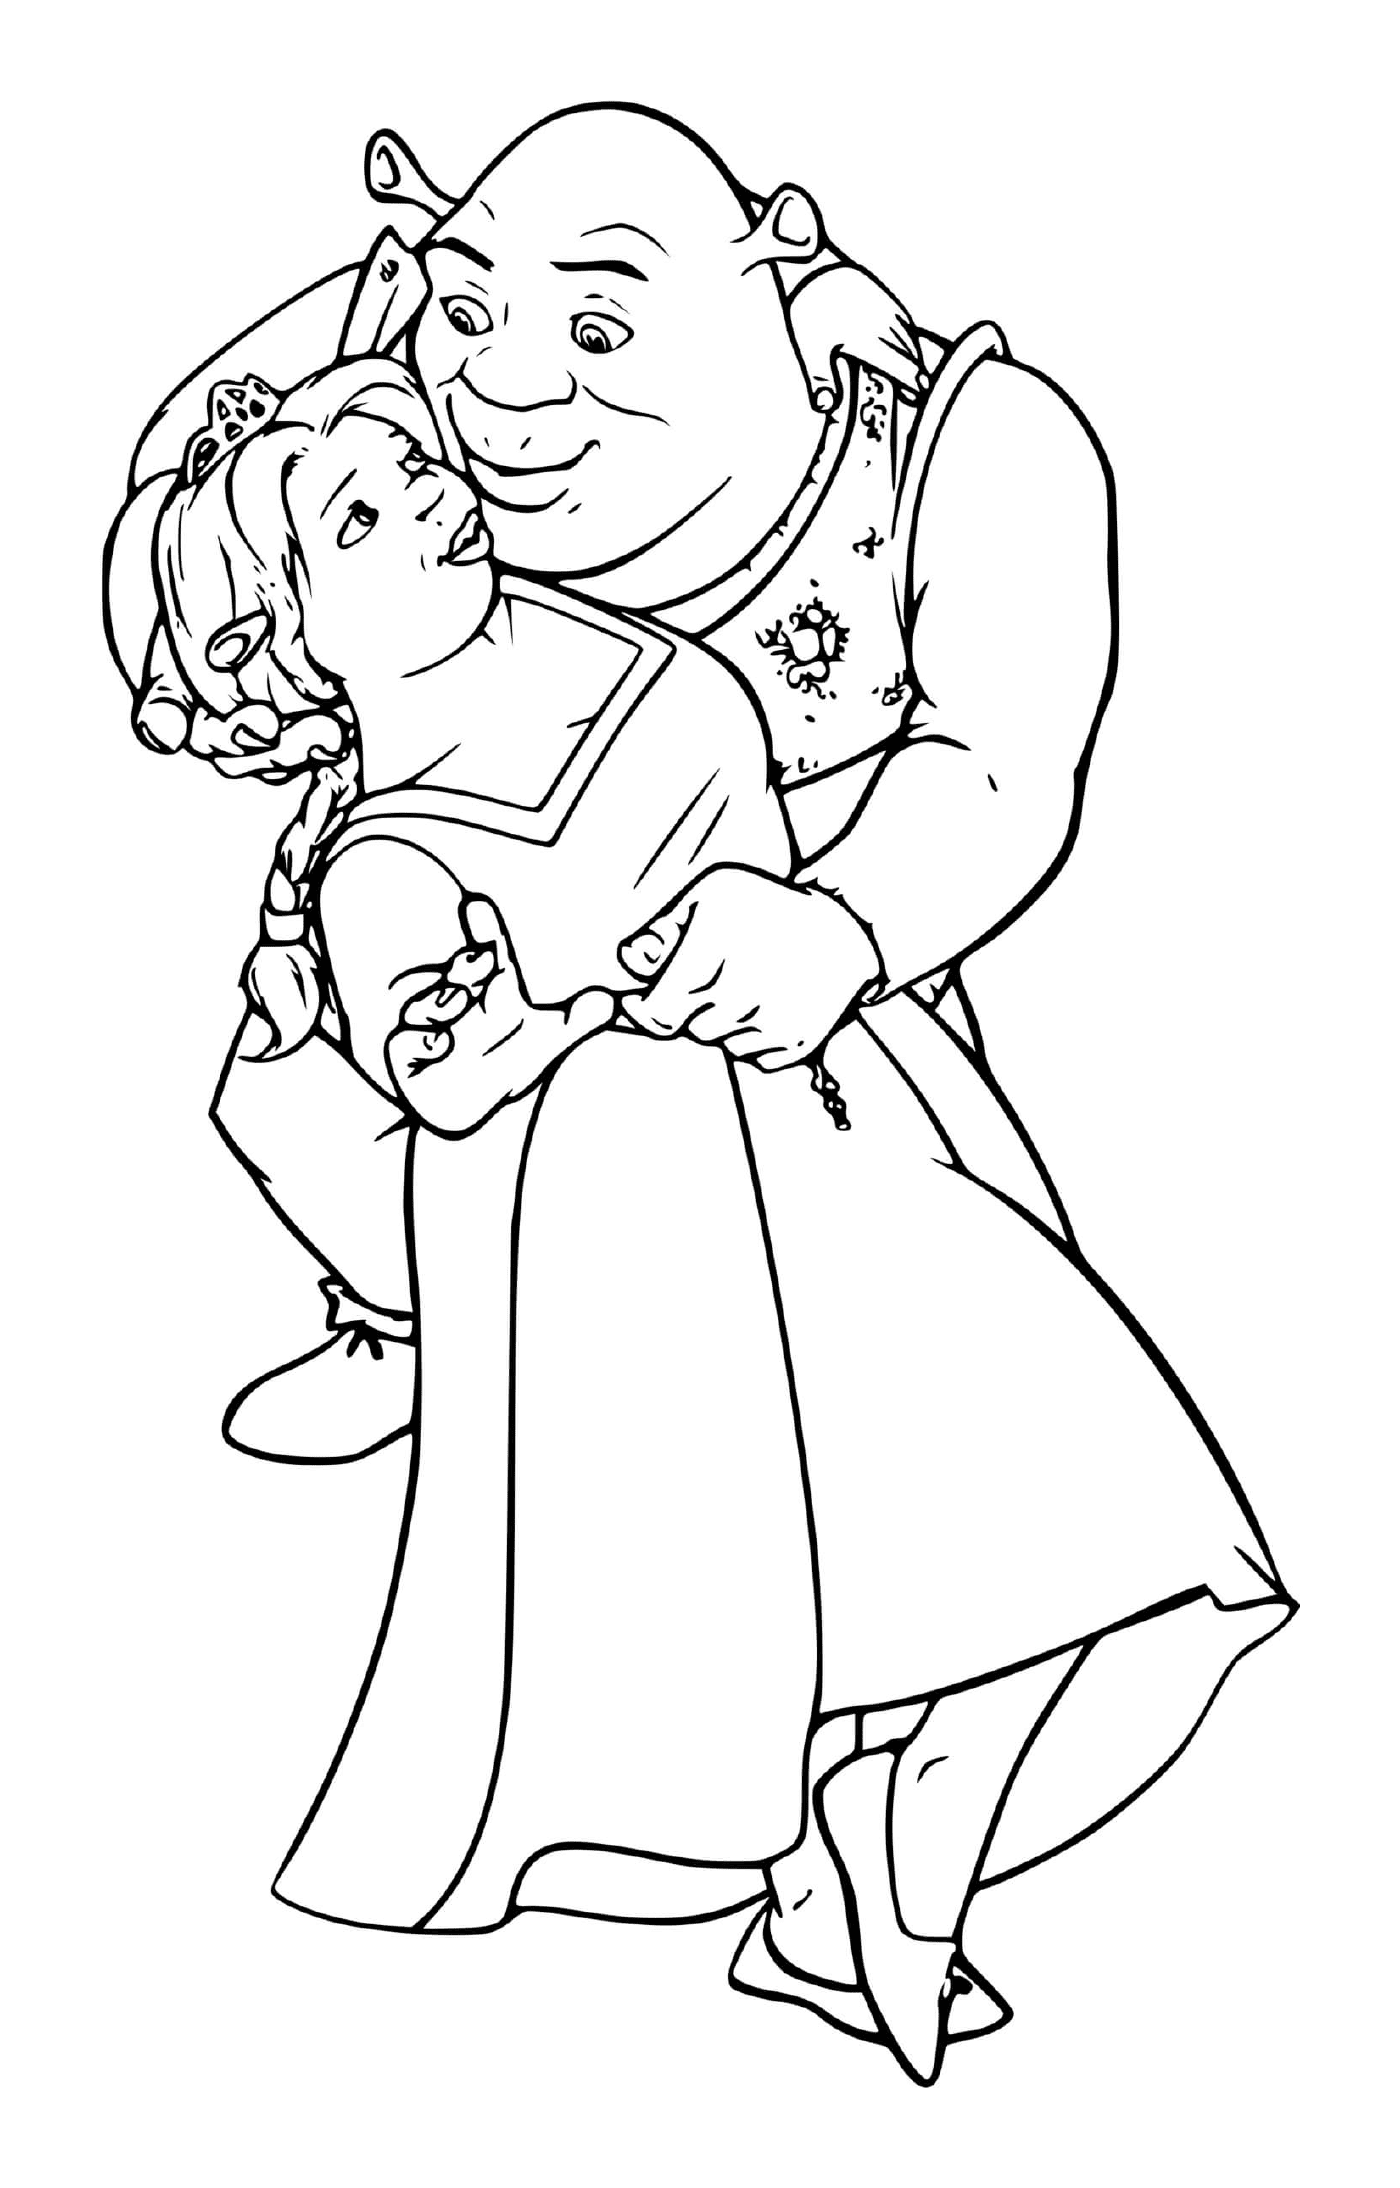  Un vecchio che tiene una bambina tra le braccia 